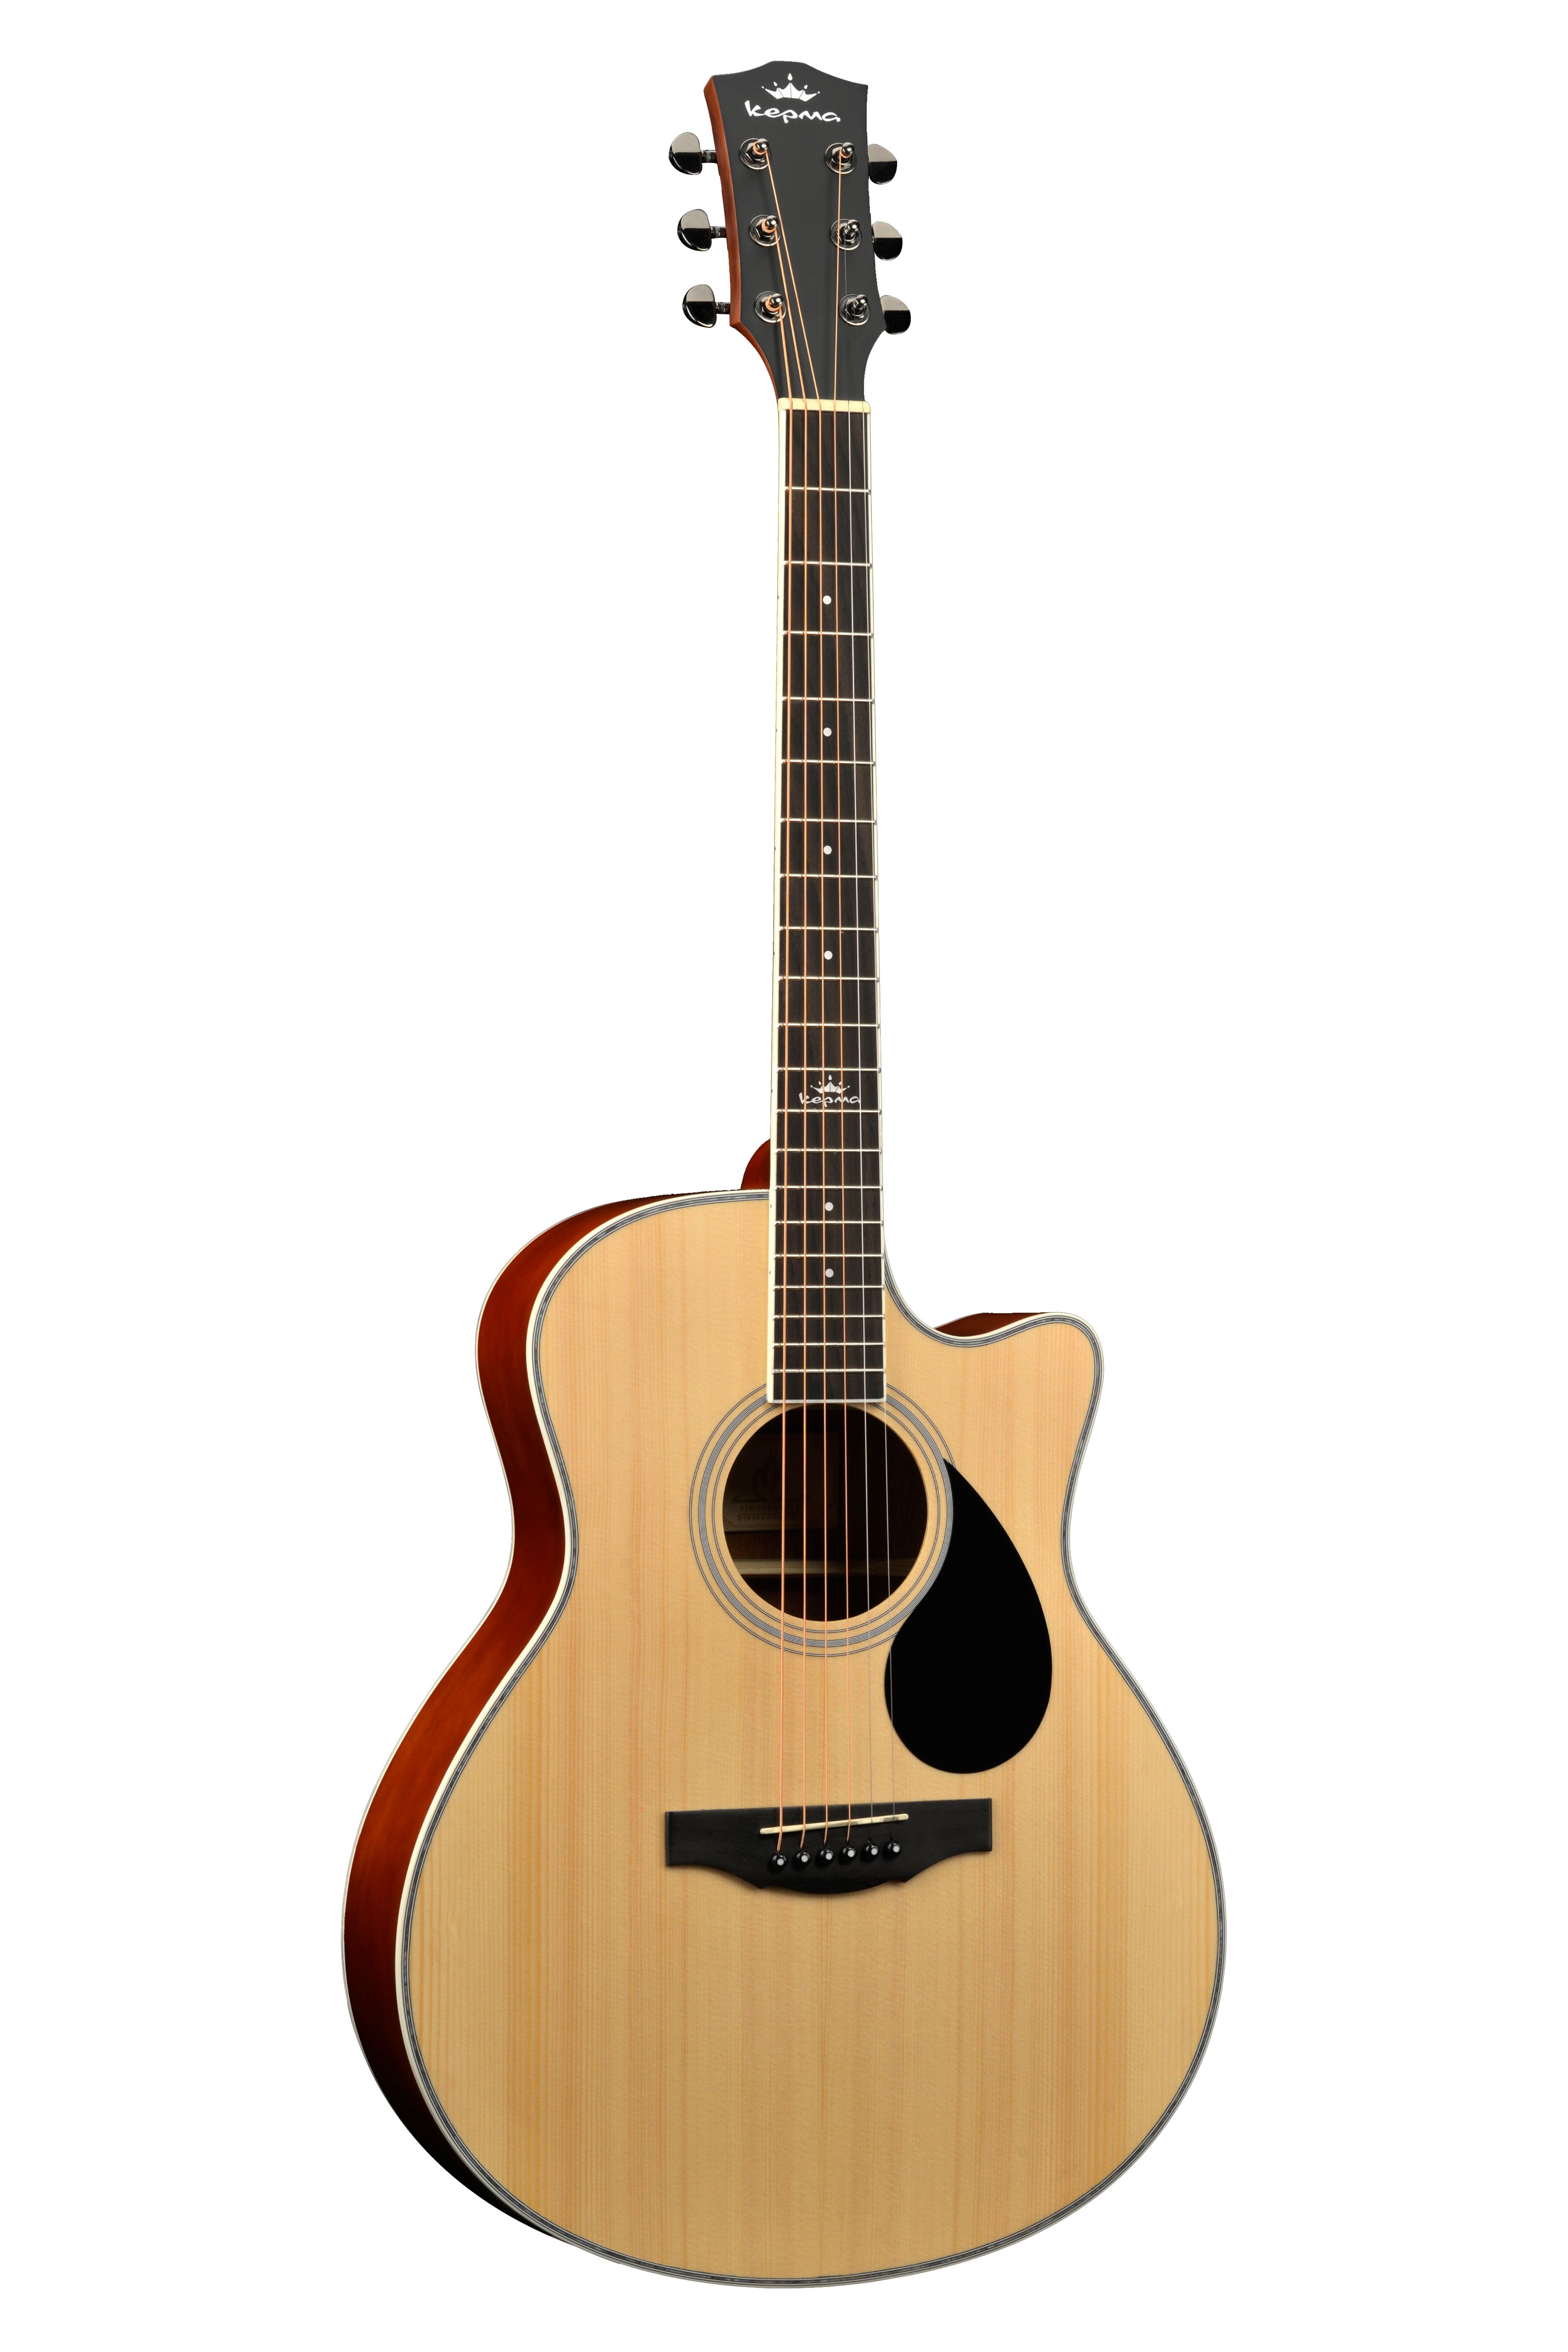 Электроакустические гитары Kepma A1CE Natural Matt процессоры эффектов и педали для гитары joyo jf 308 golden face marshall style